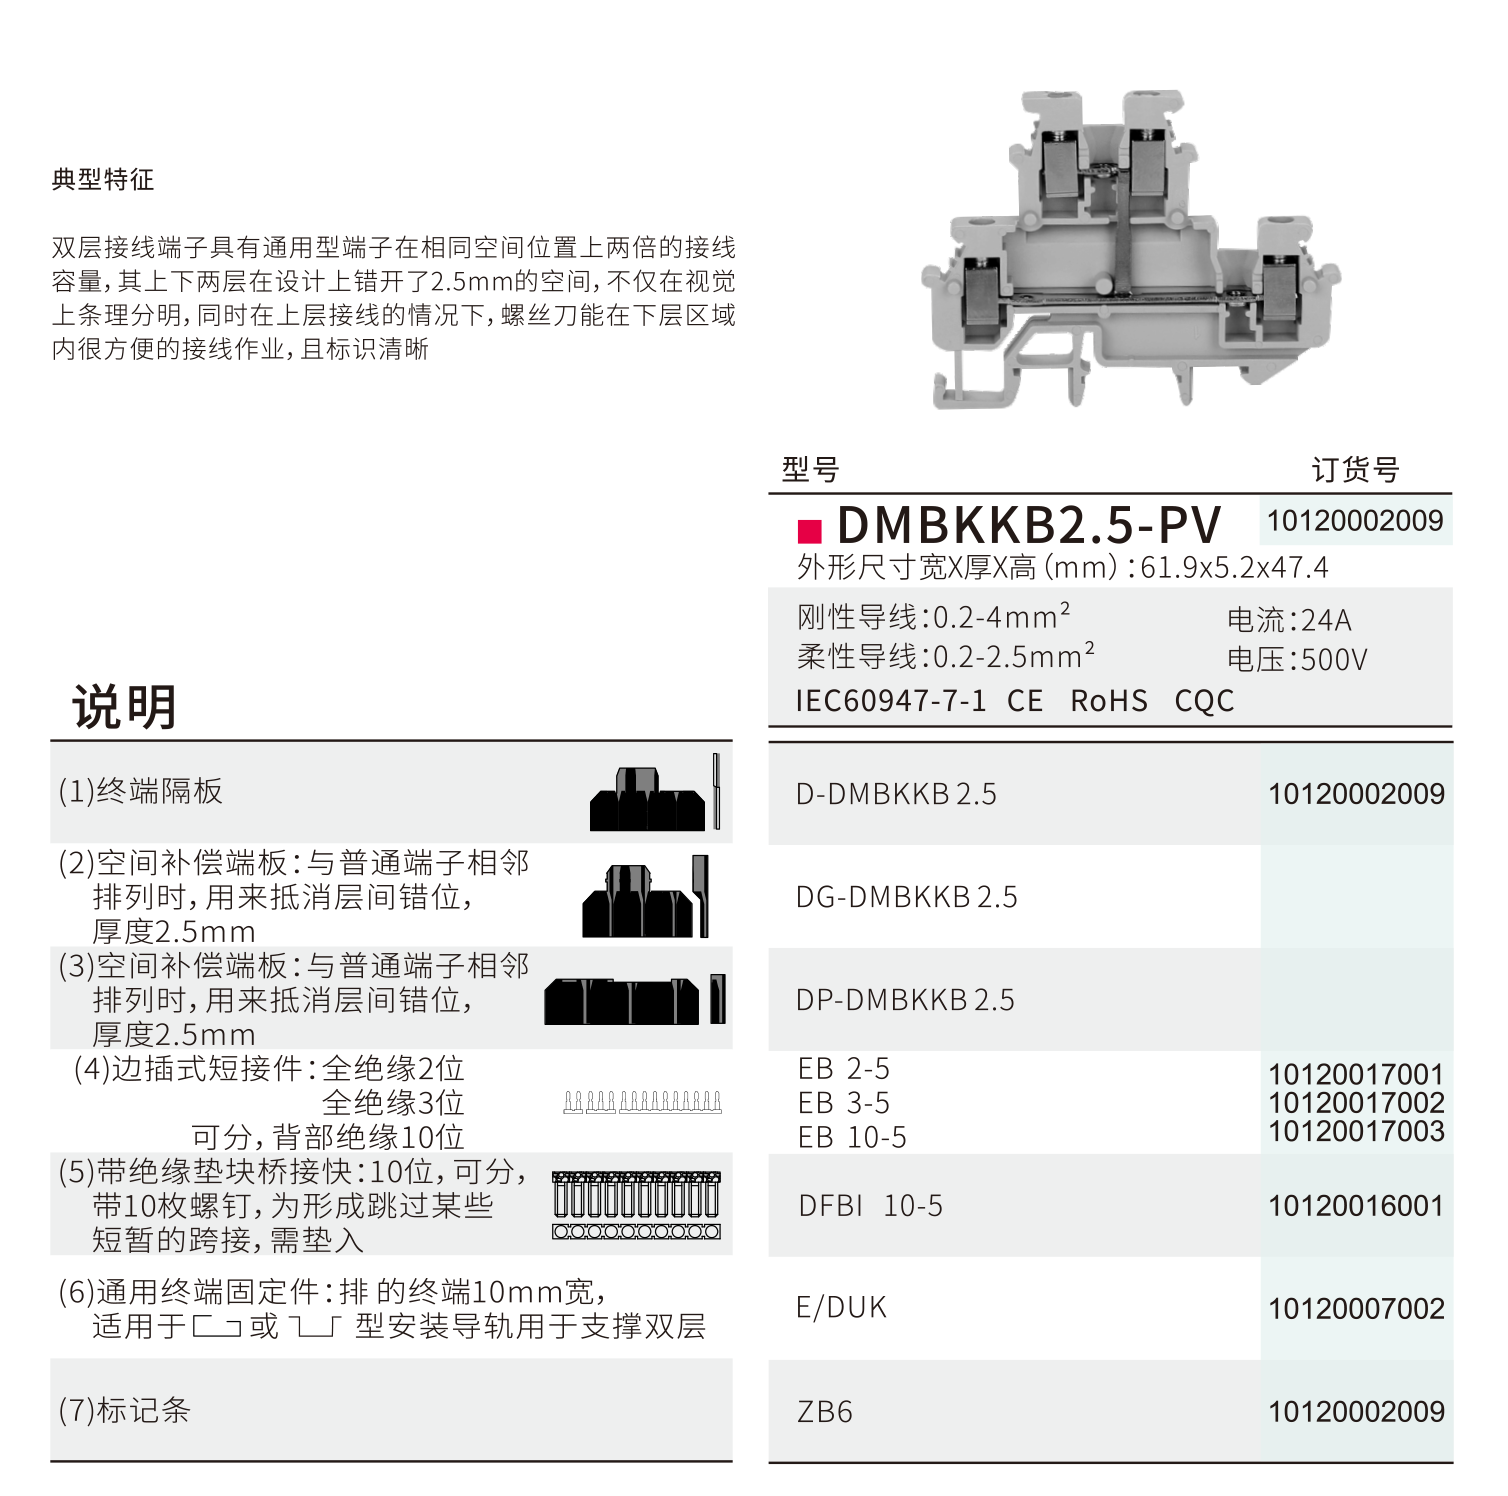 DMBKKB2.5-PV-1.png